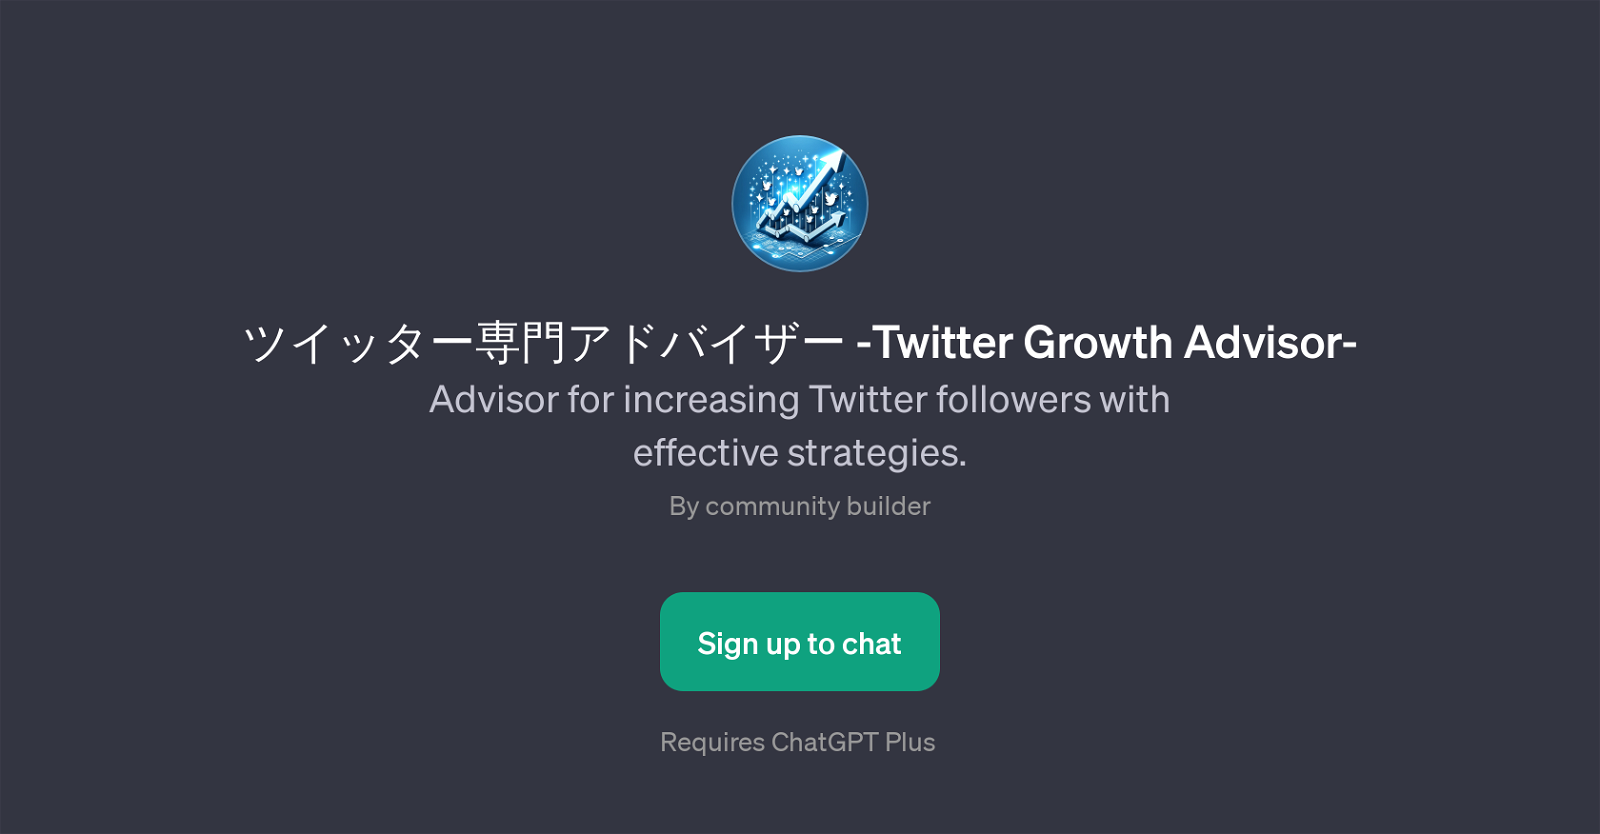 Twitter Growth Advisor website